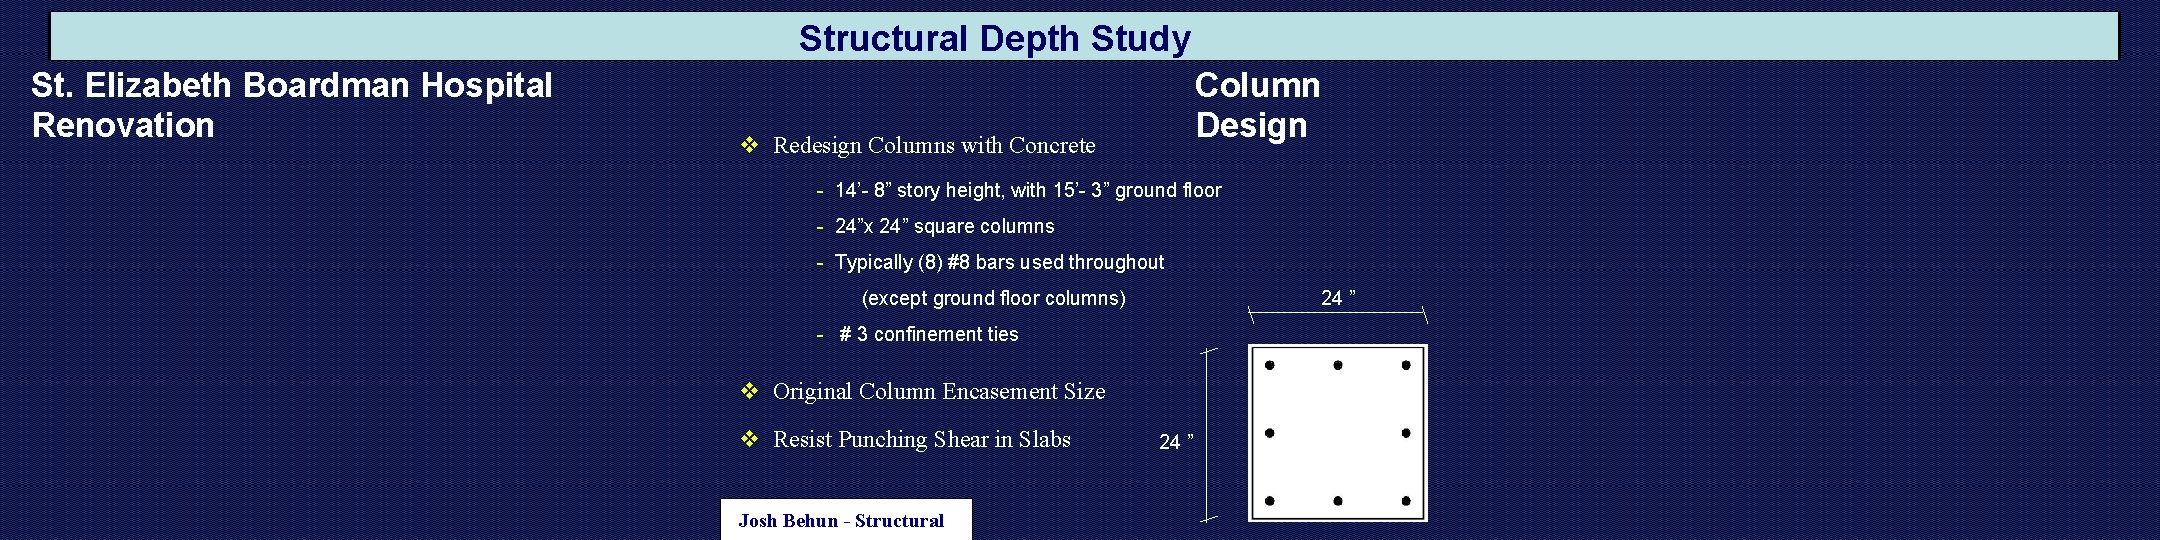 Structural Depth Study St. Elizabeth Boardman Hospital Renovation Column Design v Redesign Columns with